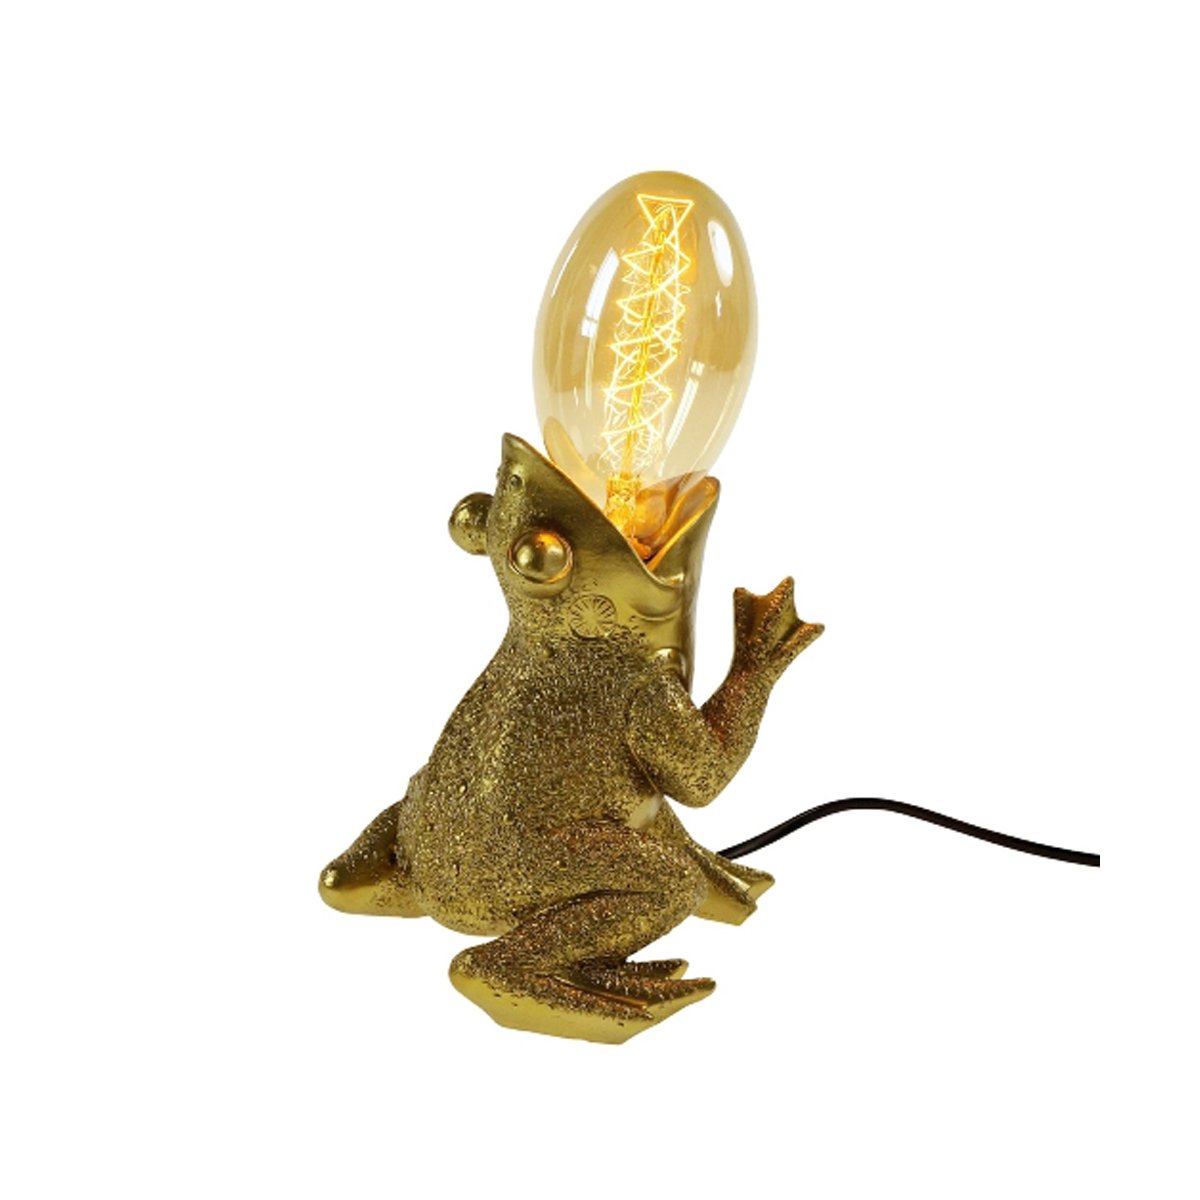 Tischleuchte Lampe Dekoleuchte, Frosch Deko, € 58,95 gold - Froggy Tischlampe